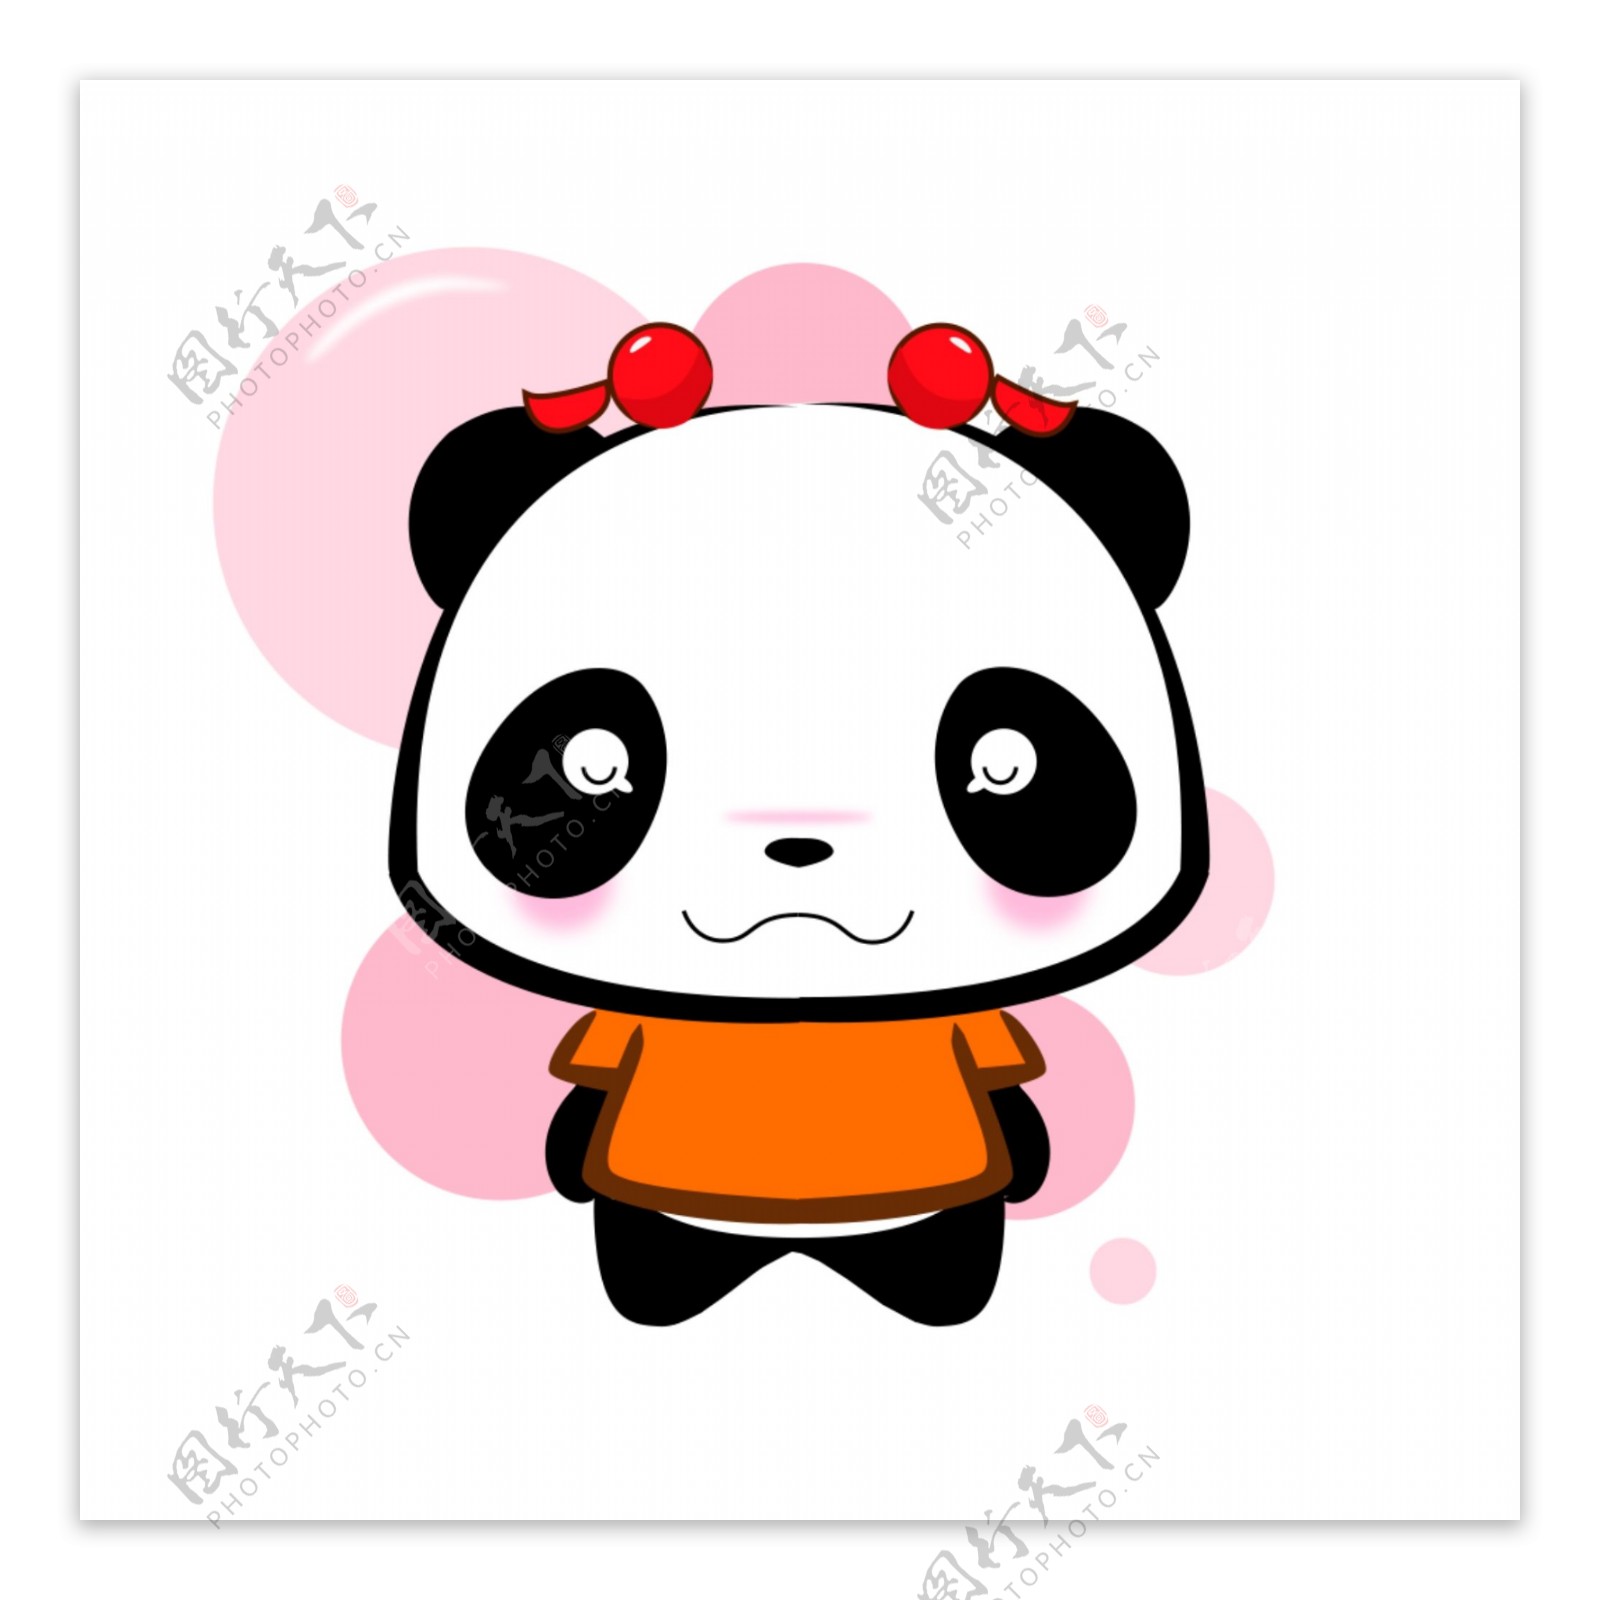 粉色熊猫害羞表情包表情设计